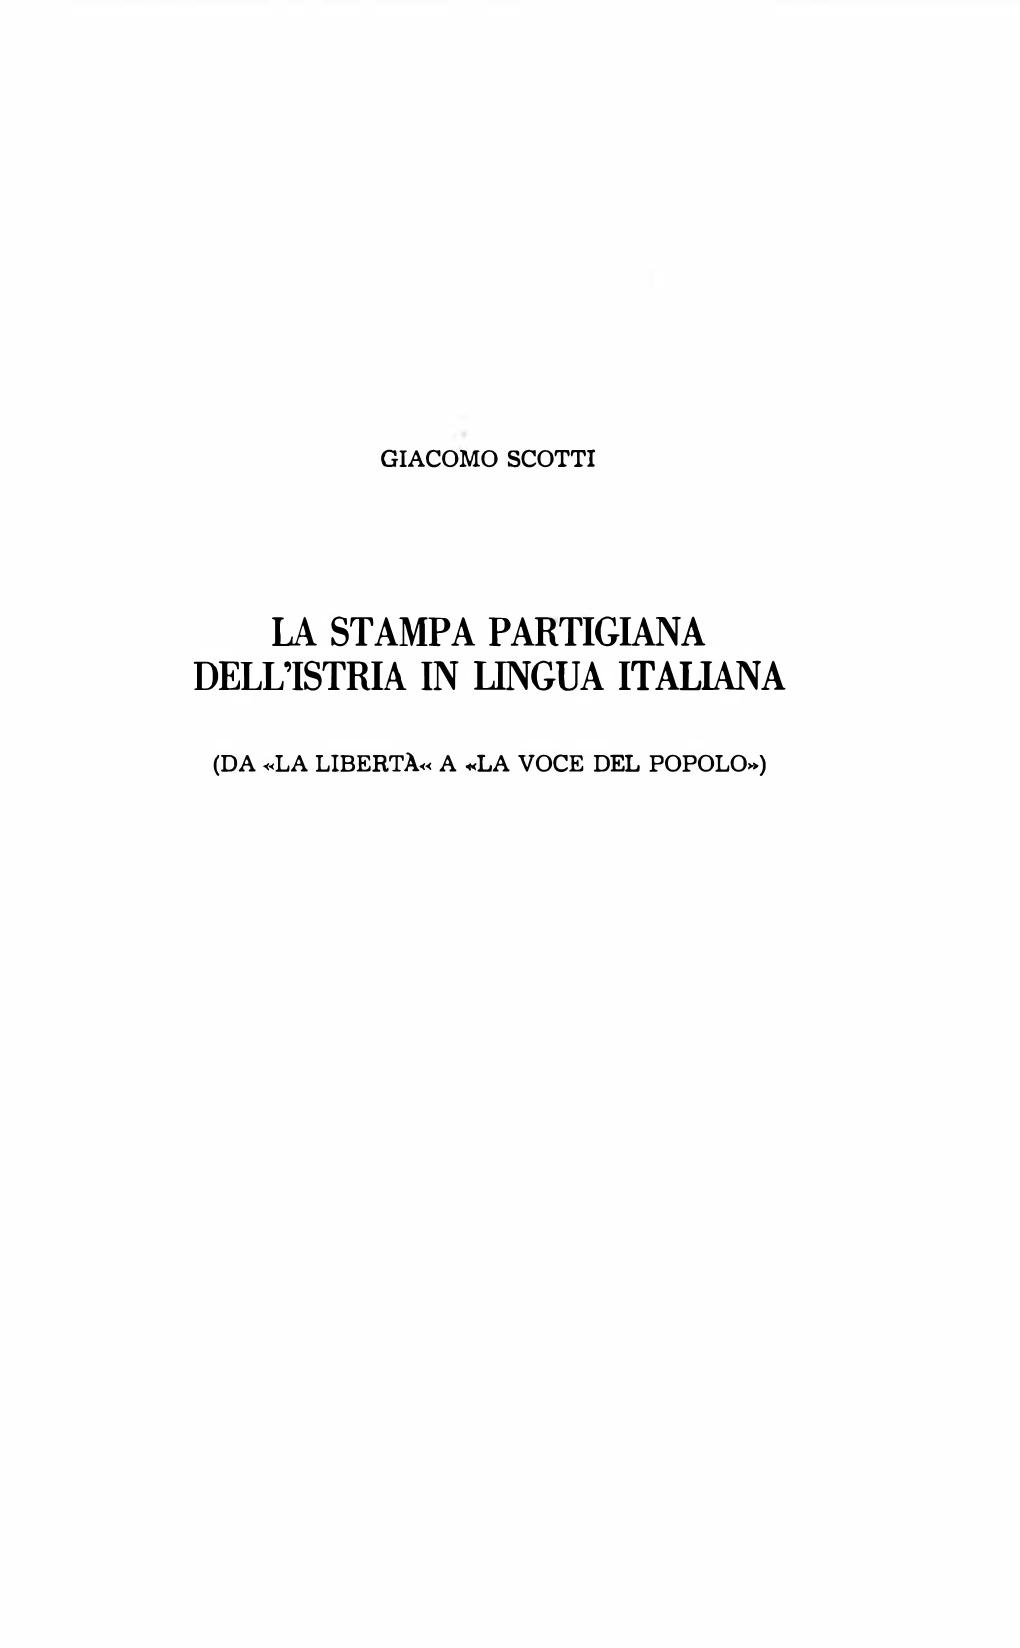 La Stampa Partigiana Dell'istria in Lingua Italiana